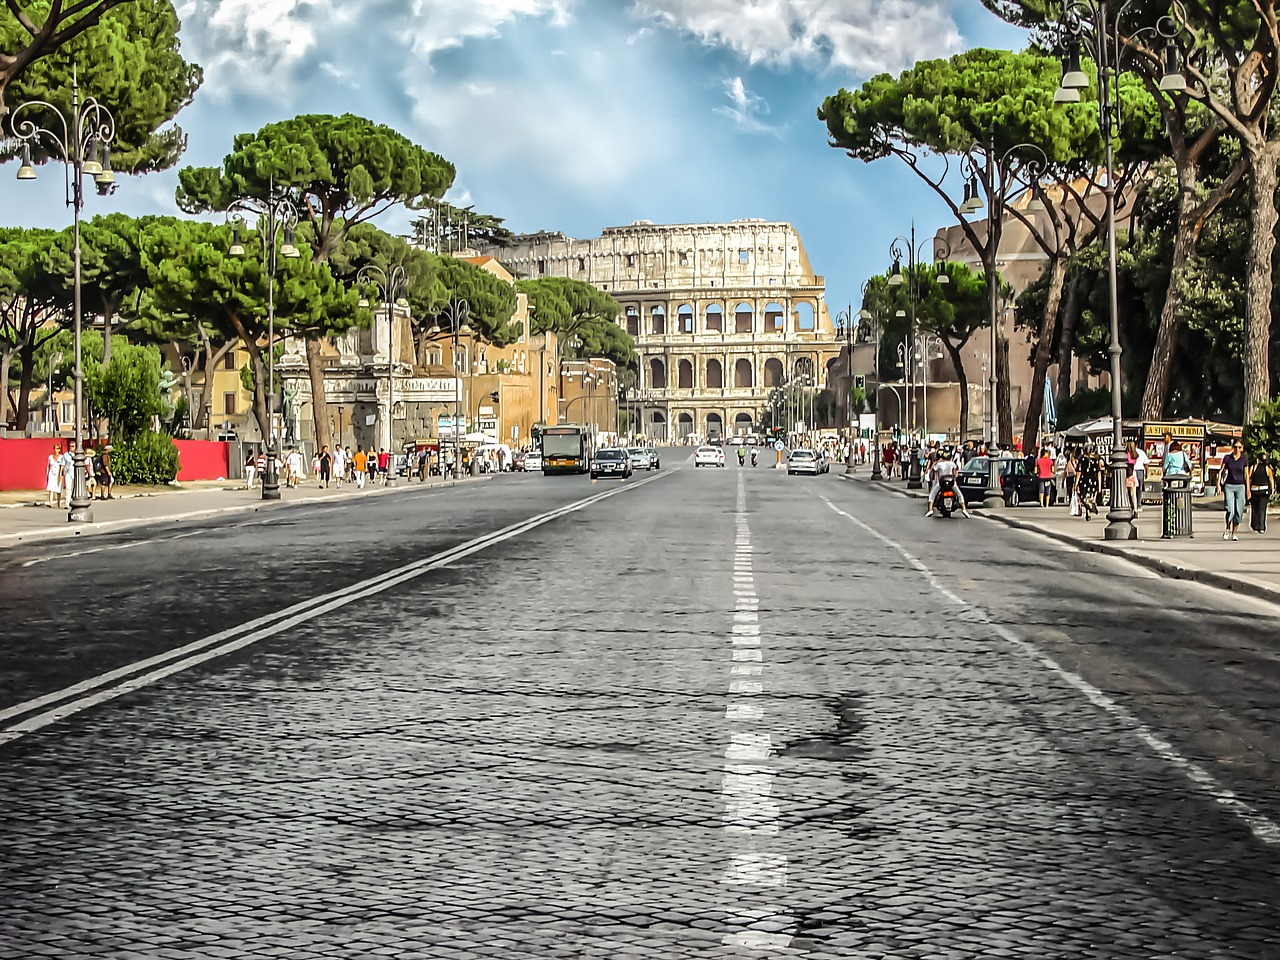 Trasporto rapido di massa: 1,8 mld a Roma per cura del ferro e rinnovo parco autobus